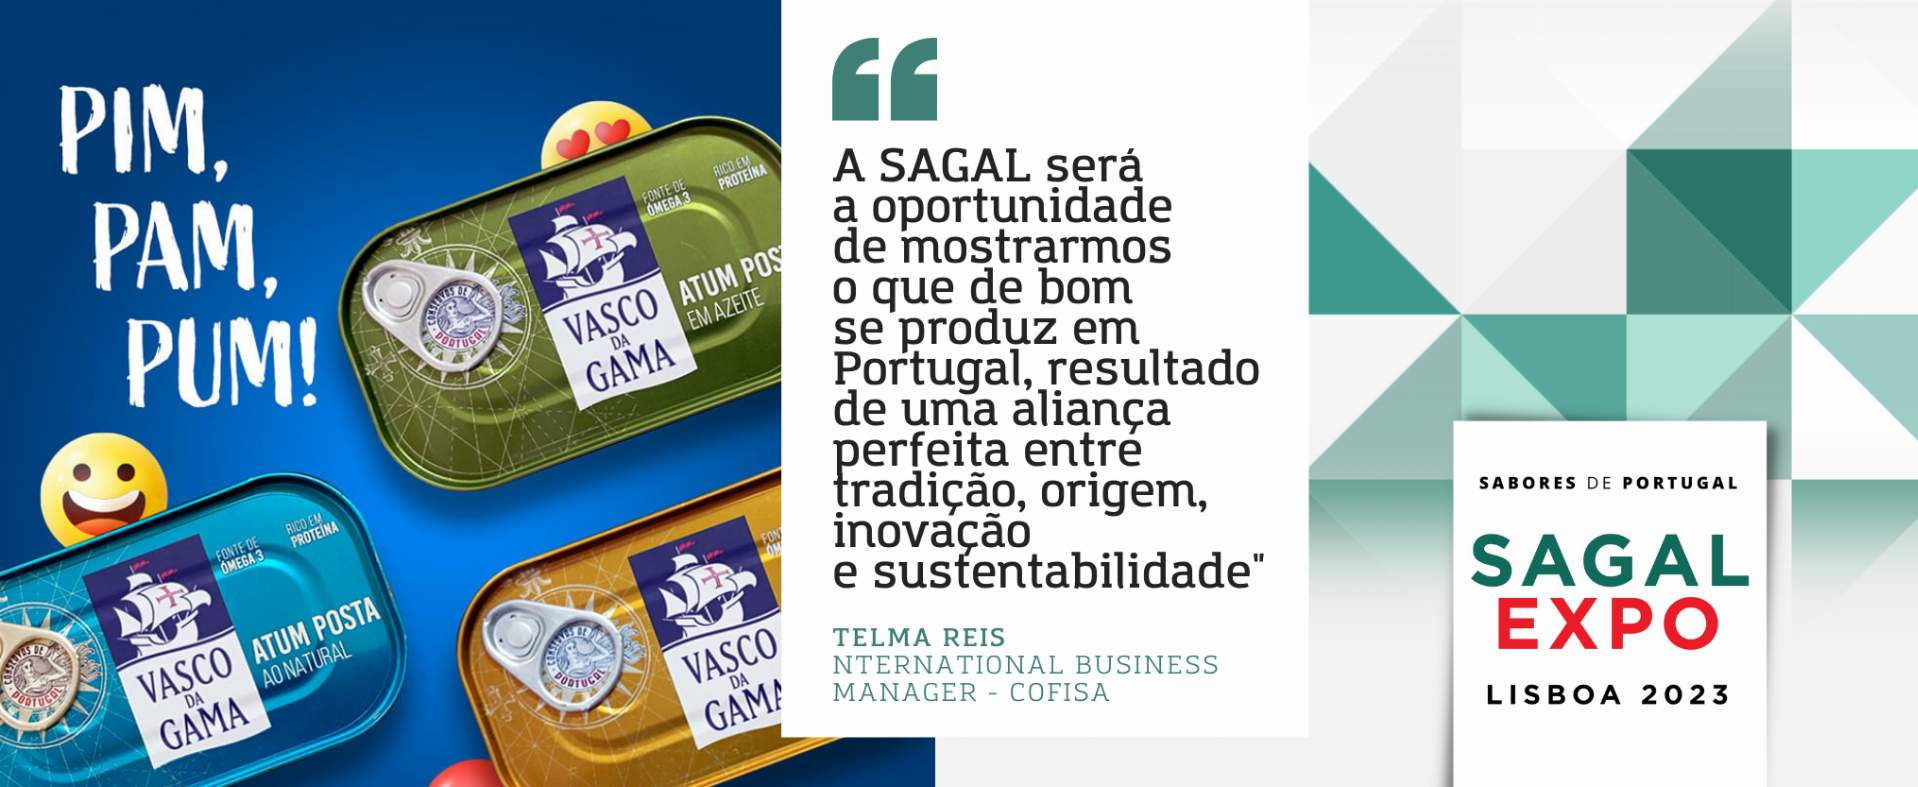 Cofisa: “A Sagal será uma vez mais a oportunidade de mostrarmos o que de bom se produz em Portugal, resultado de uma aliança perfeita entre tradição, origem, inovação e sustentabilidade”.